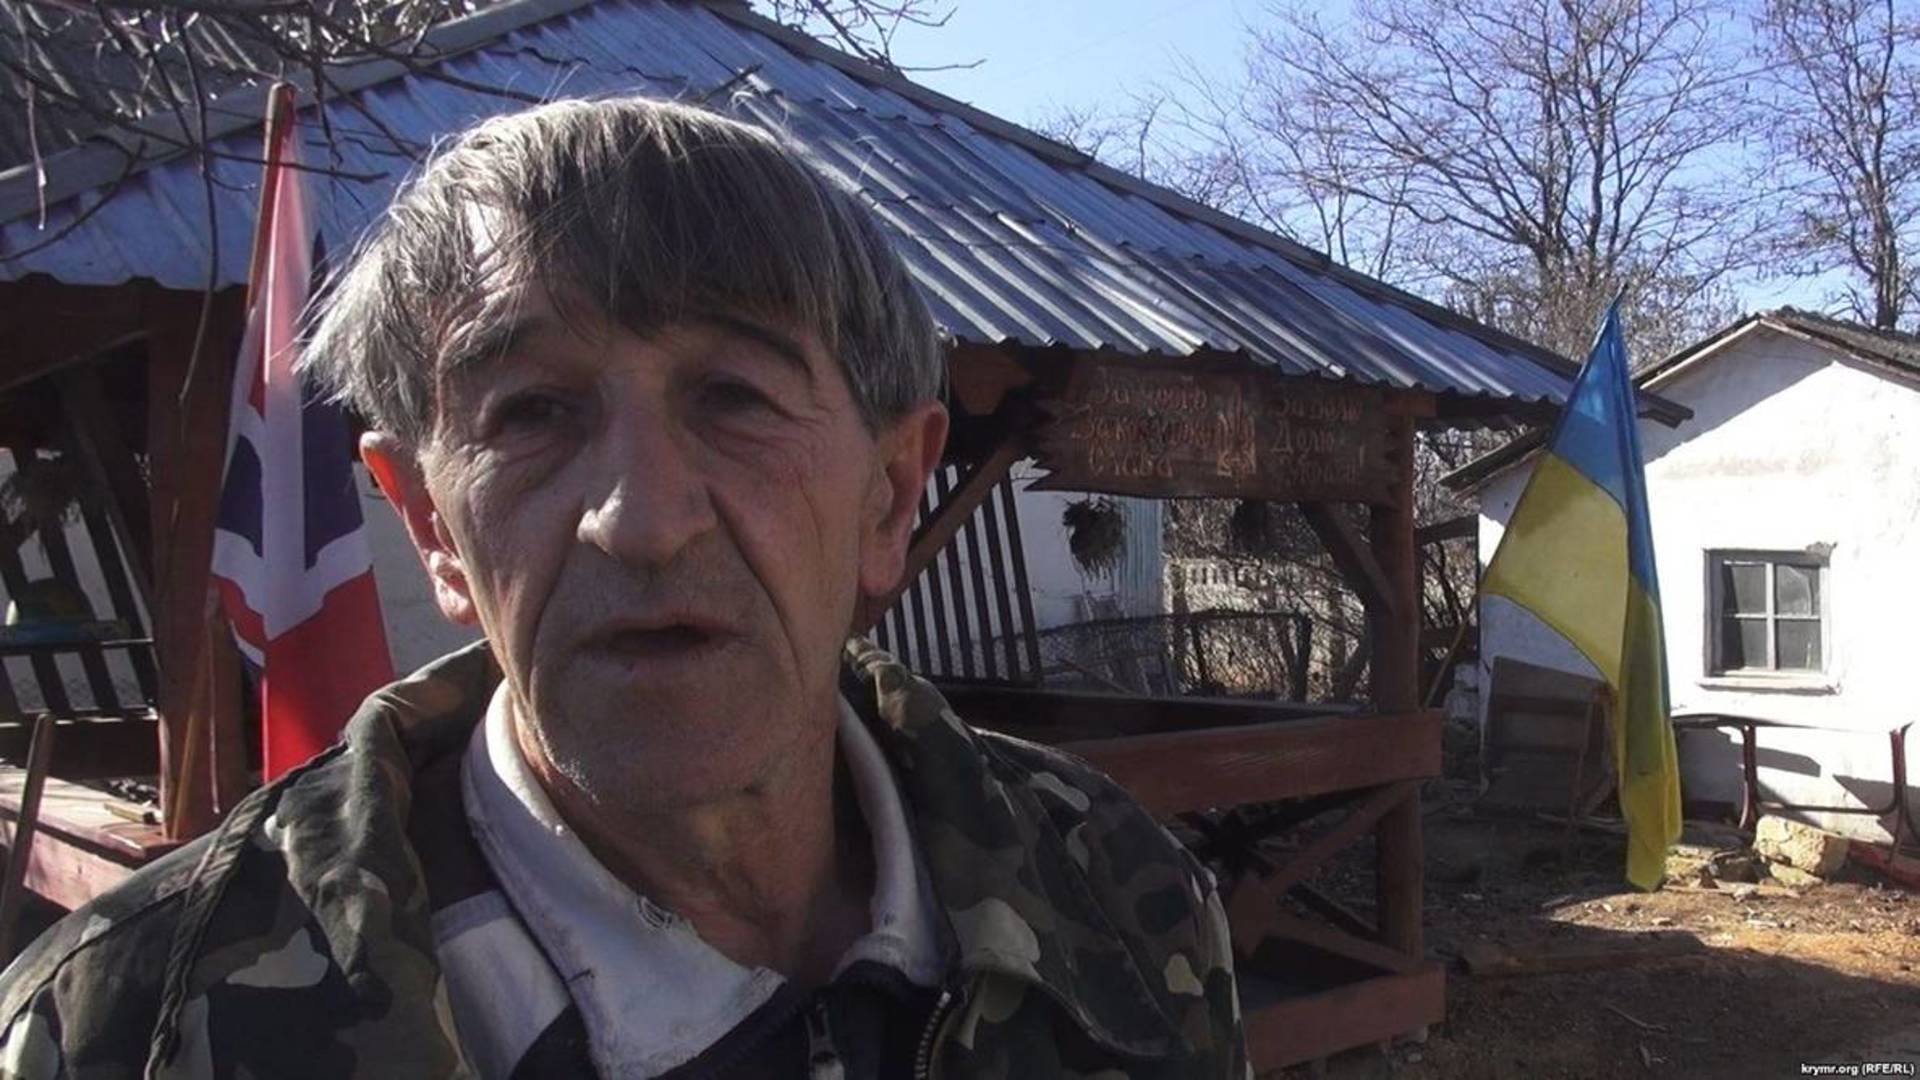 Выволокли с дома в чем был: В Крыму задержали проукраинского активиста Приходько. Вывезло в неизвестном направлении